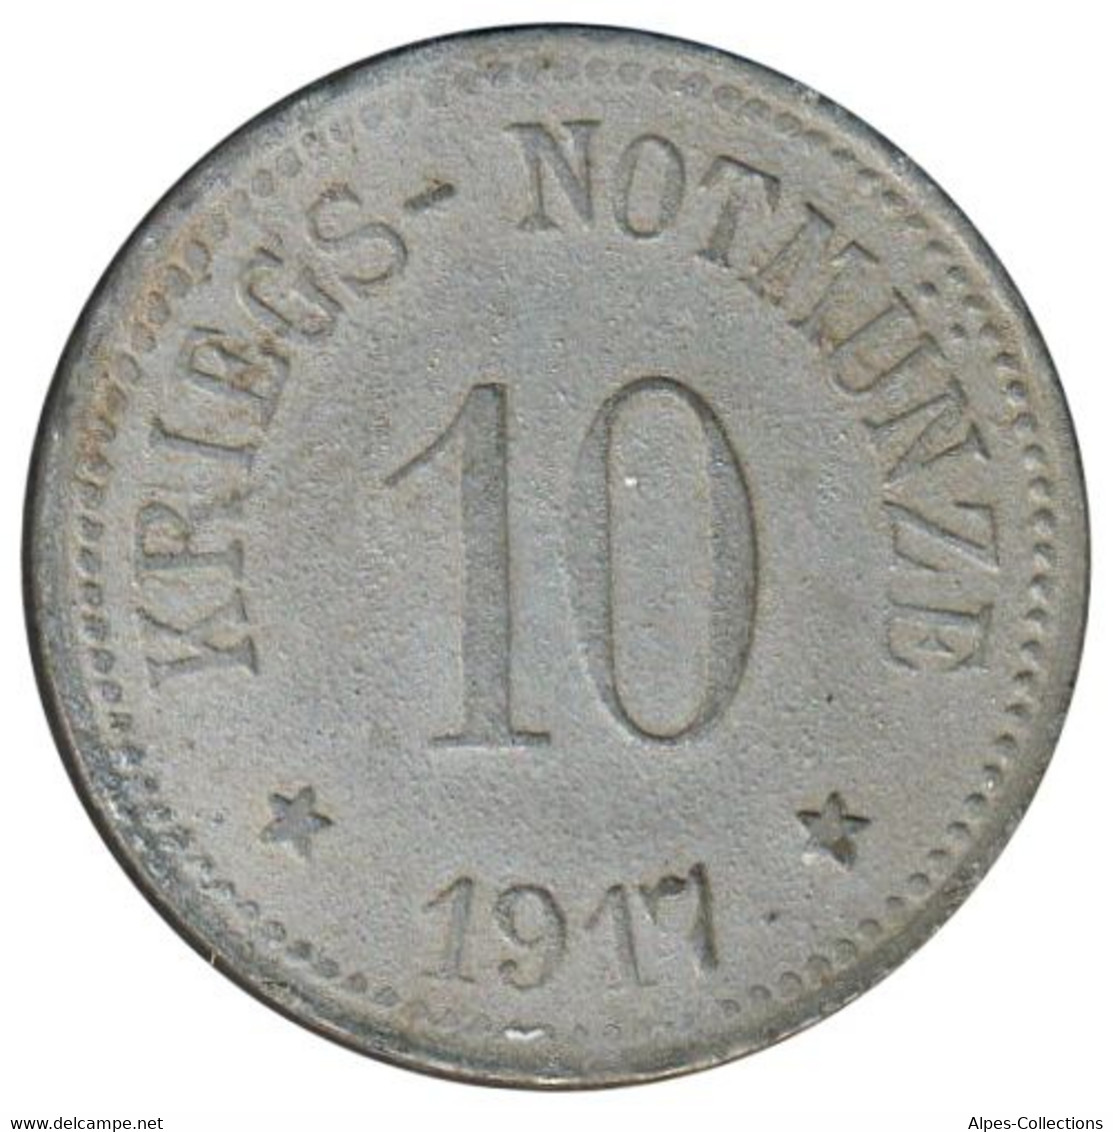 ALLEMAGNE - ARZBERG - 10.2 - Monnaie De Nécessité - 10 Pfennig 1917 - Monétaires/De Nécessité